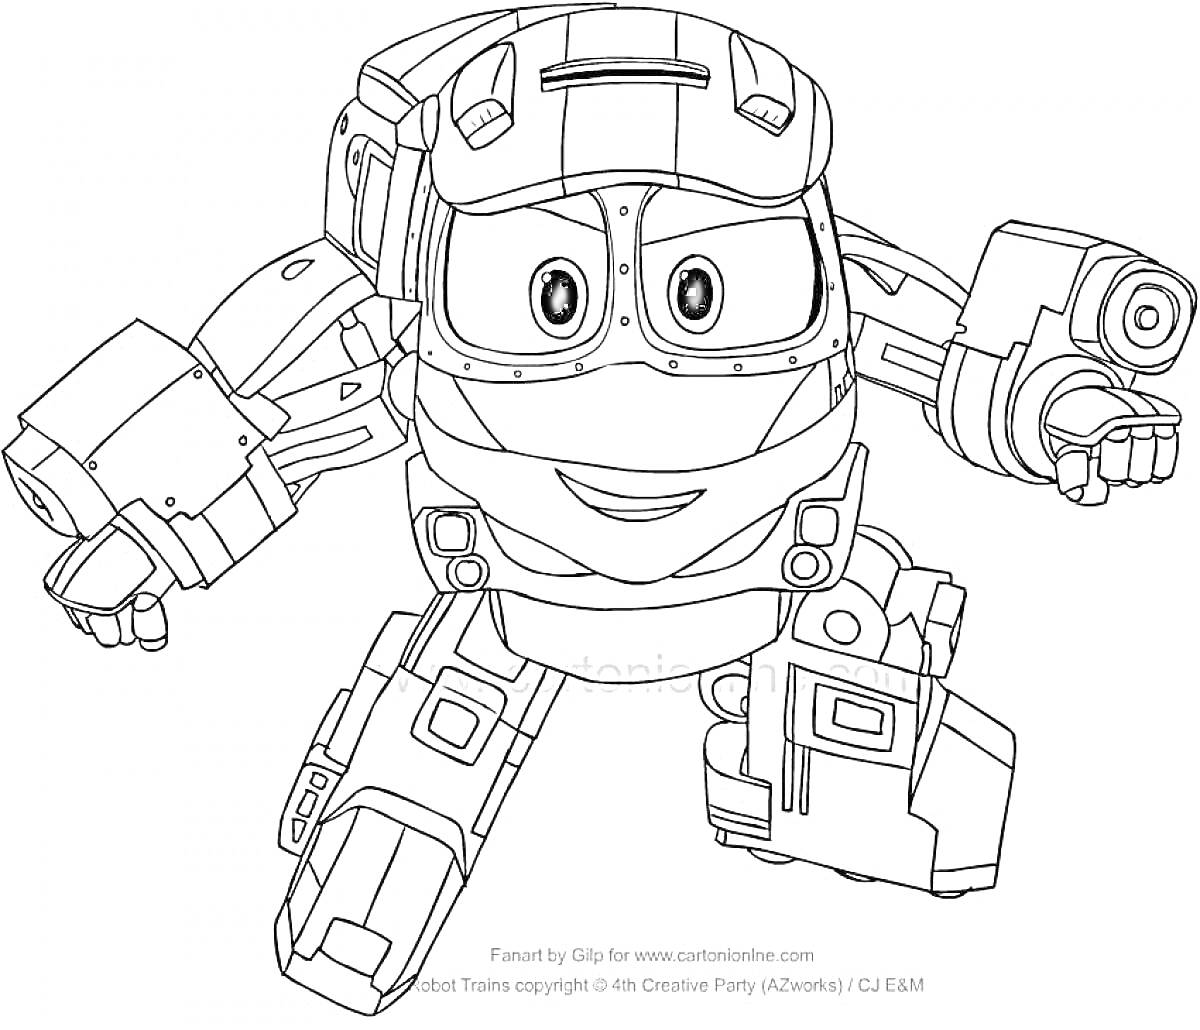 Раскраска Мультяшный робот с большими глазами и улыбкой в боевой позе